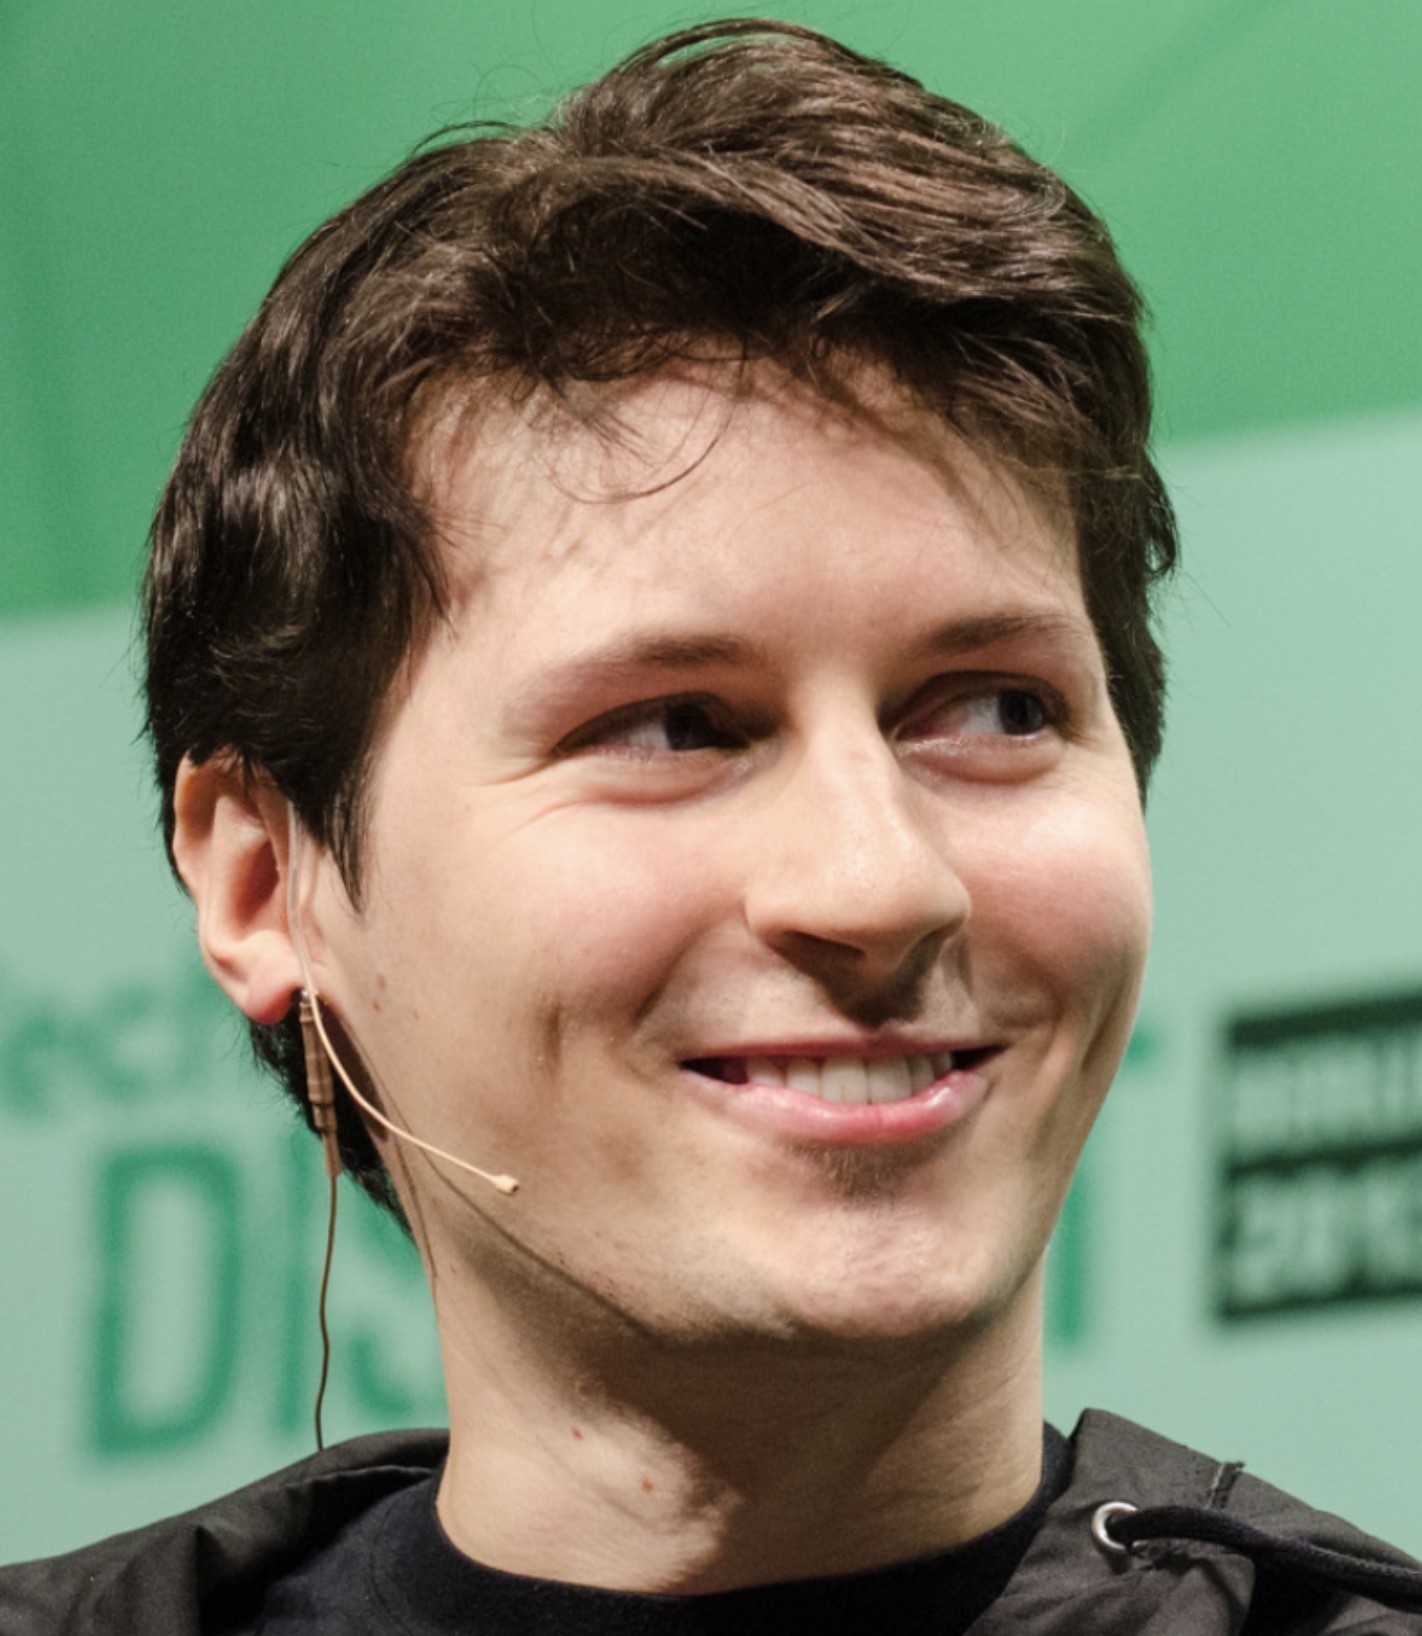 Павел Дуров анонсировал функцию защиты от получения нежелательных сообщений